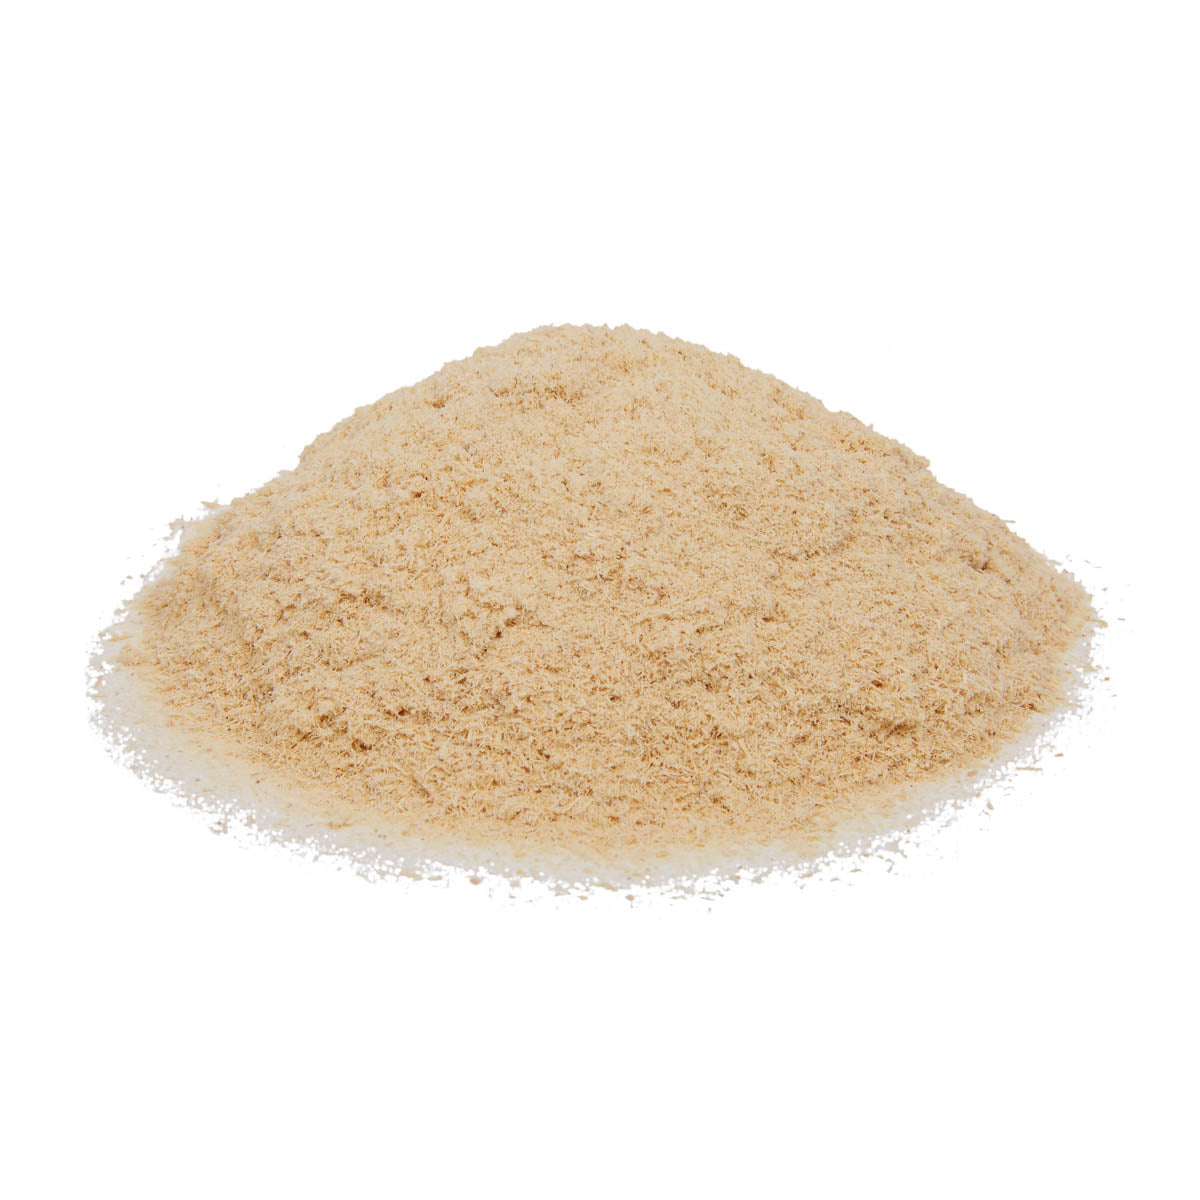 Astragalus Powder - Organic (100g, 250g, 1kg)